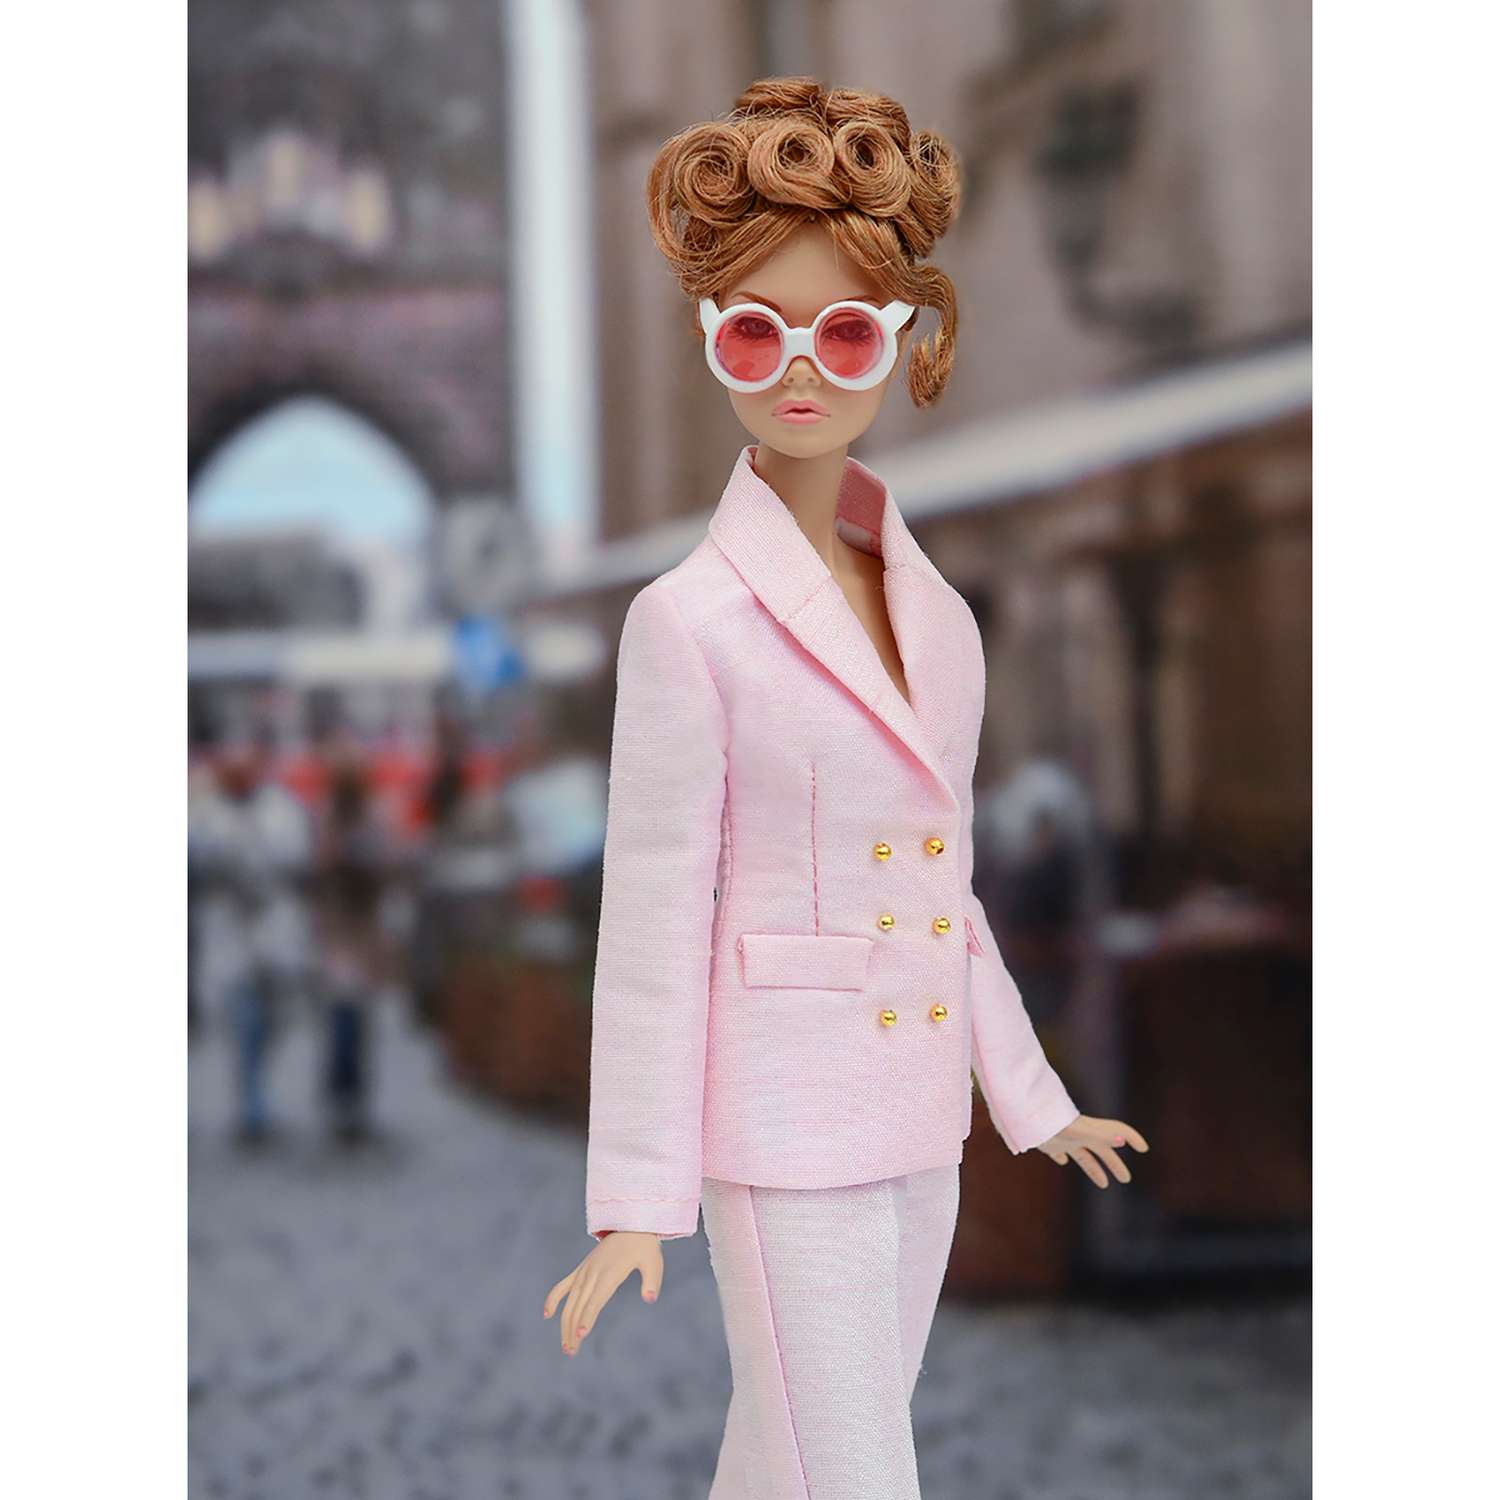 Шелковый брючный костюм Эленприв Светло-розовый для куклы 29 см типа Барби FA-011-04 - фото 3